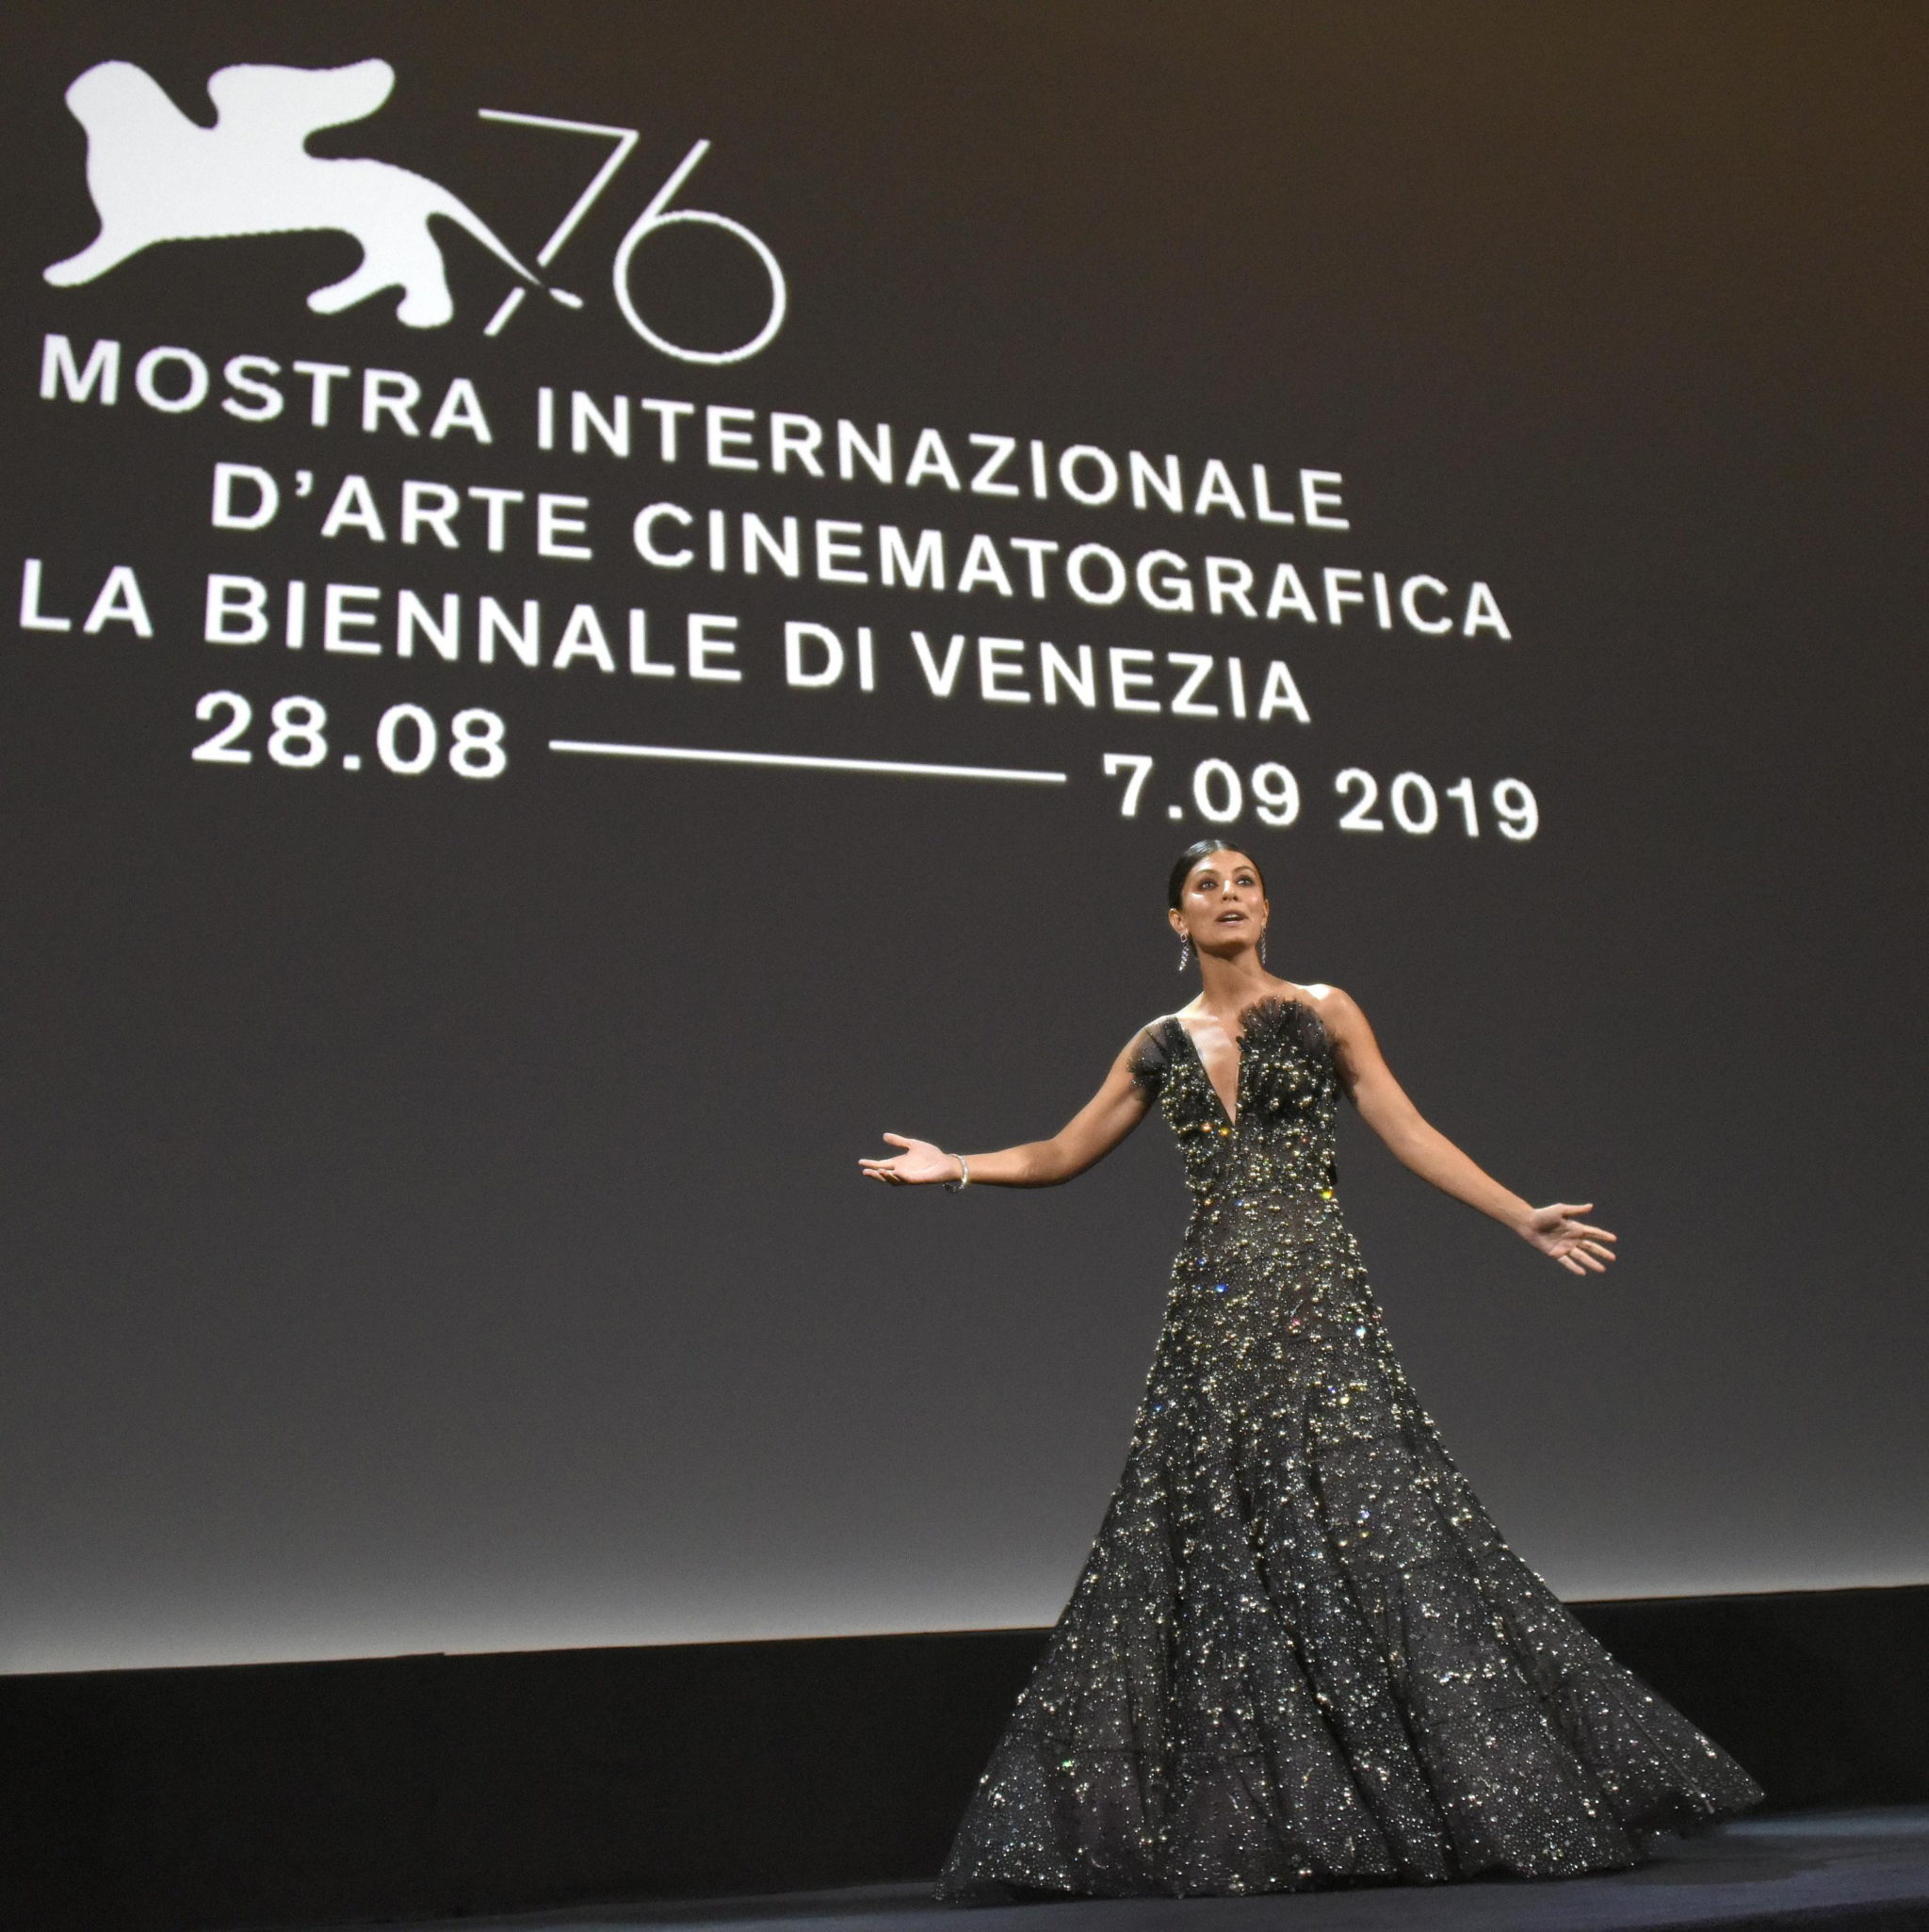 Włochy: aktorka Alessandra Mastronardi  podczas ceremonii otwarcia  76. Międzynarodowego Festiwalu Filmowego w Wenecji we Włoszech. fot. CLAUDIO ONORATI/epa 